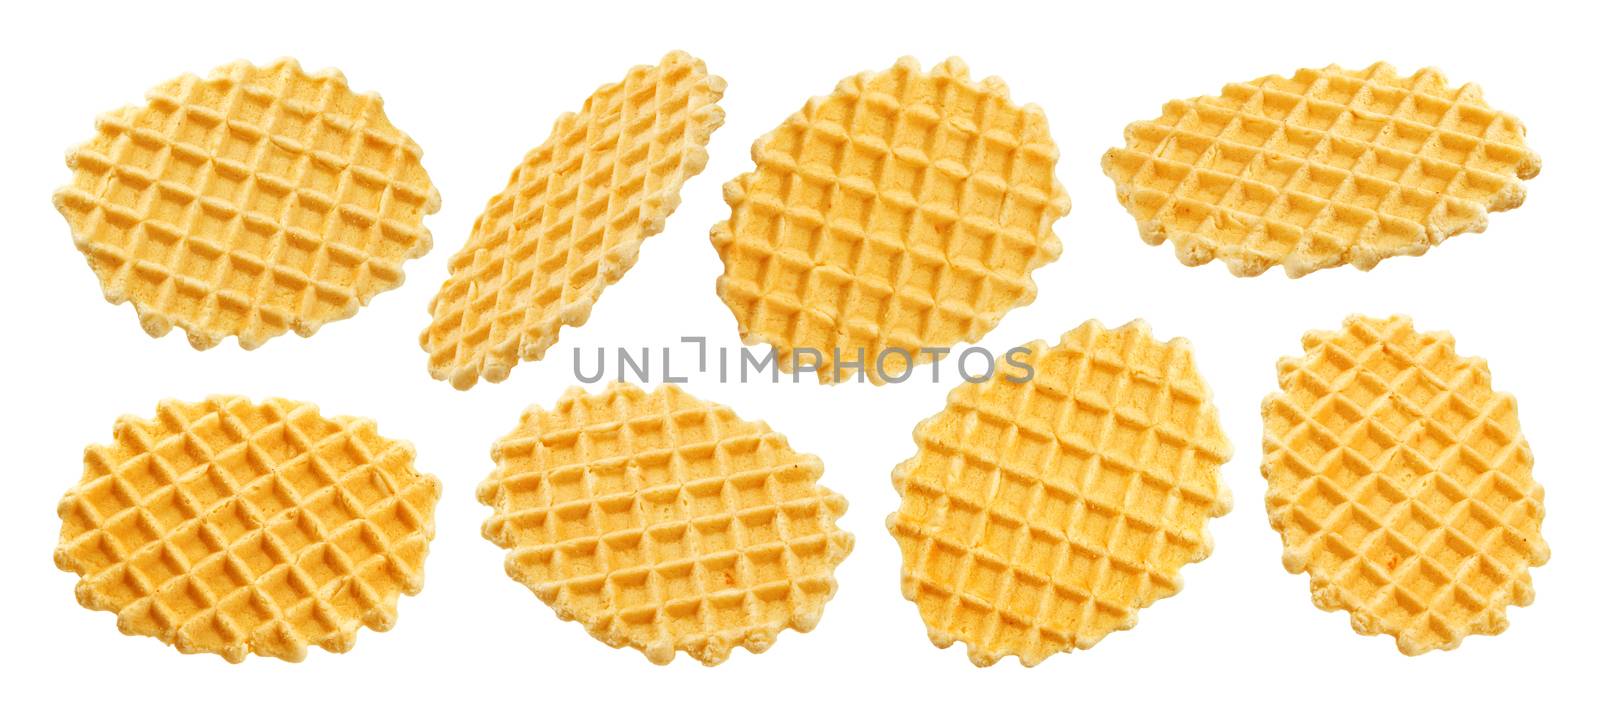 Belgian waffles isolated on white background by xamtiw